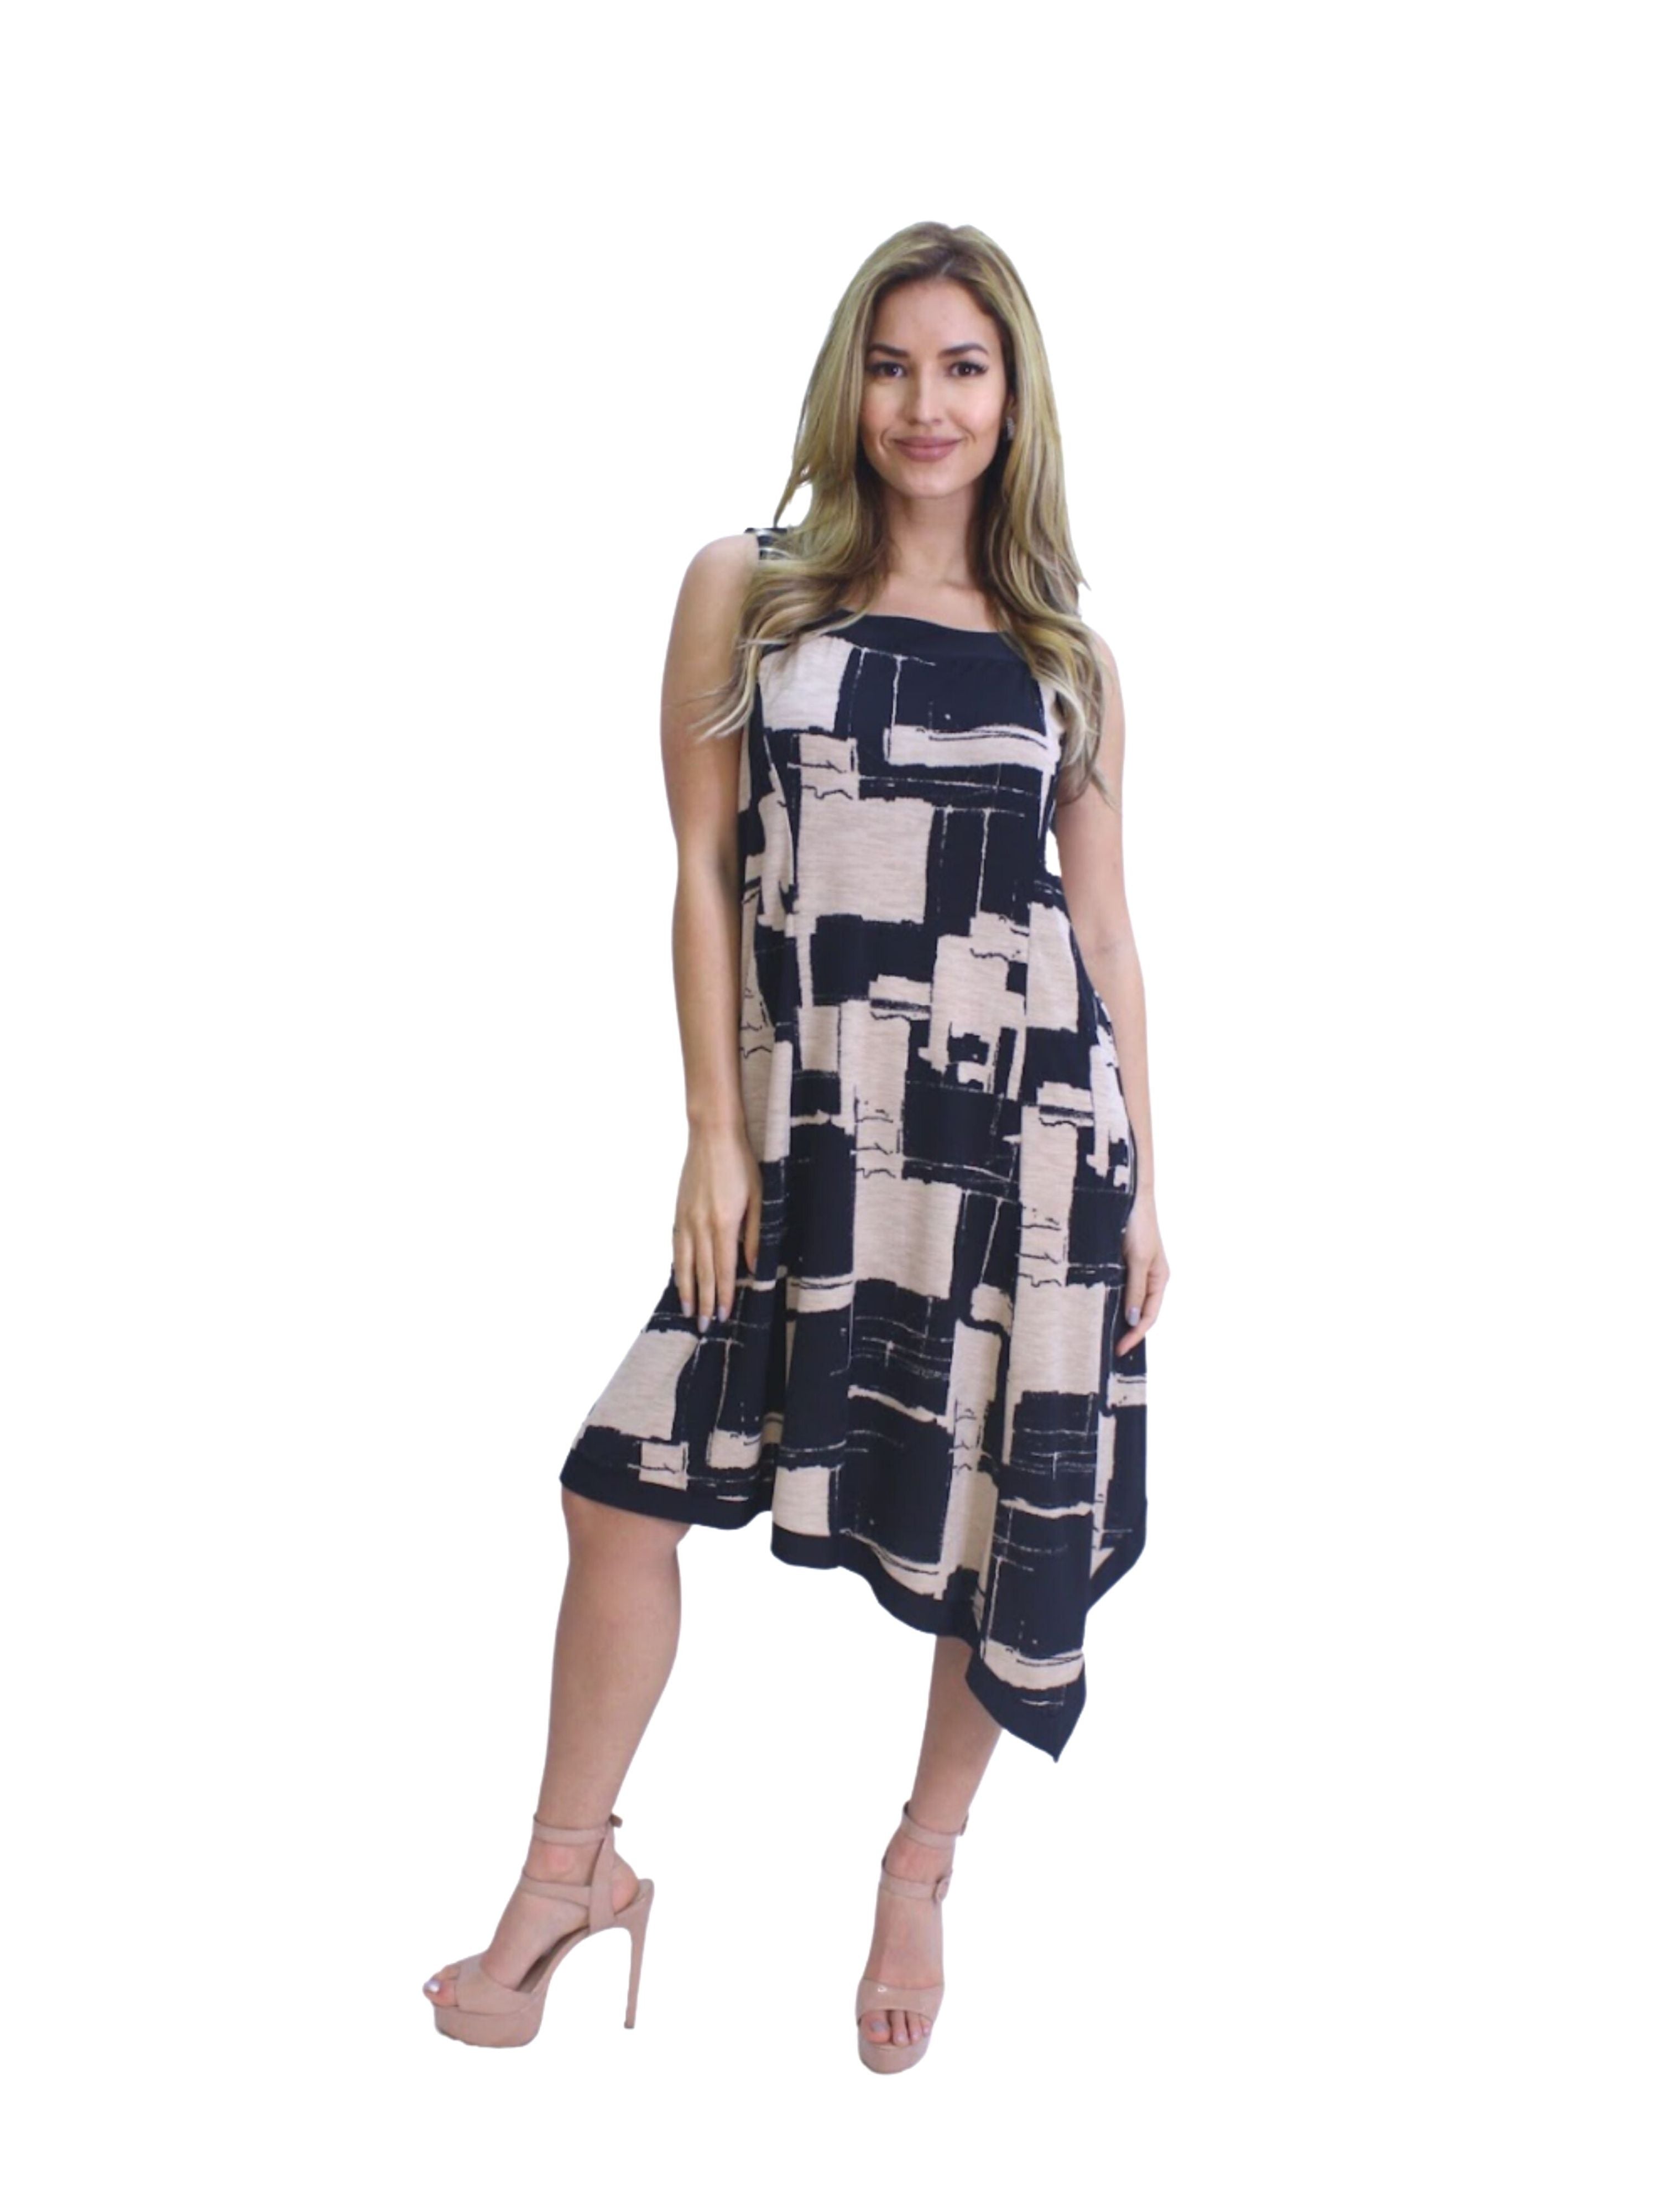 FASHQUE - Women Asymmetrical Neck Long Sleeveless Dress- D072 SALE